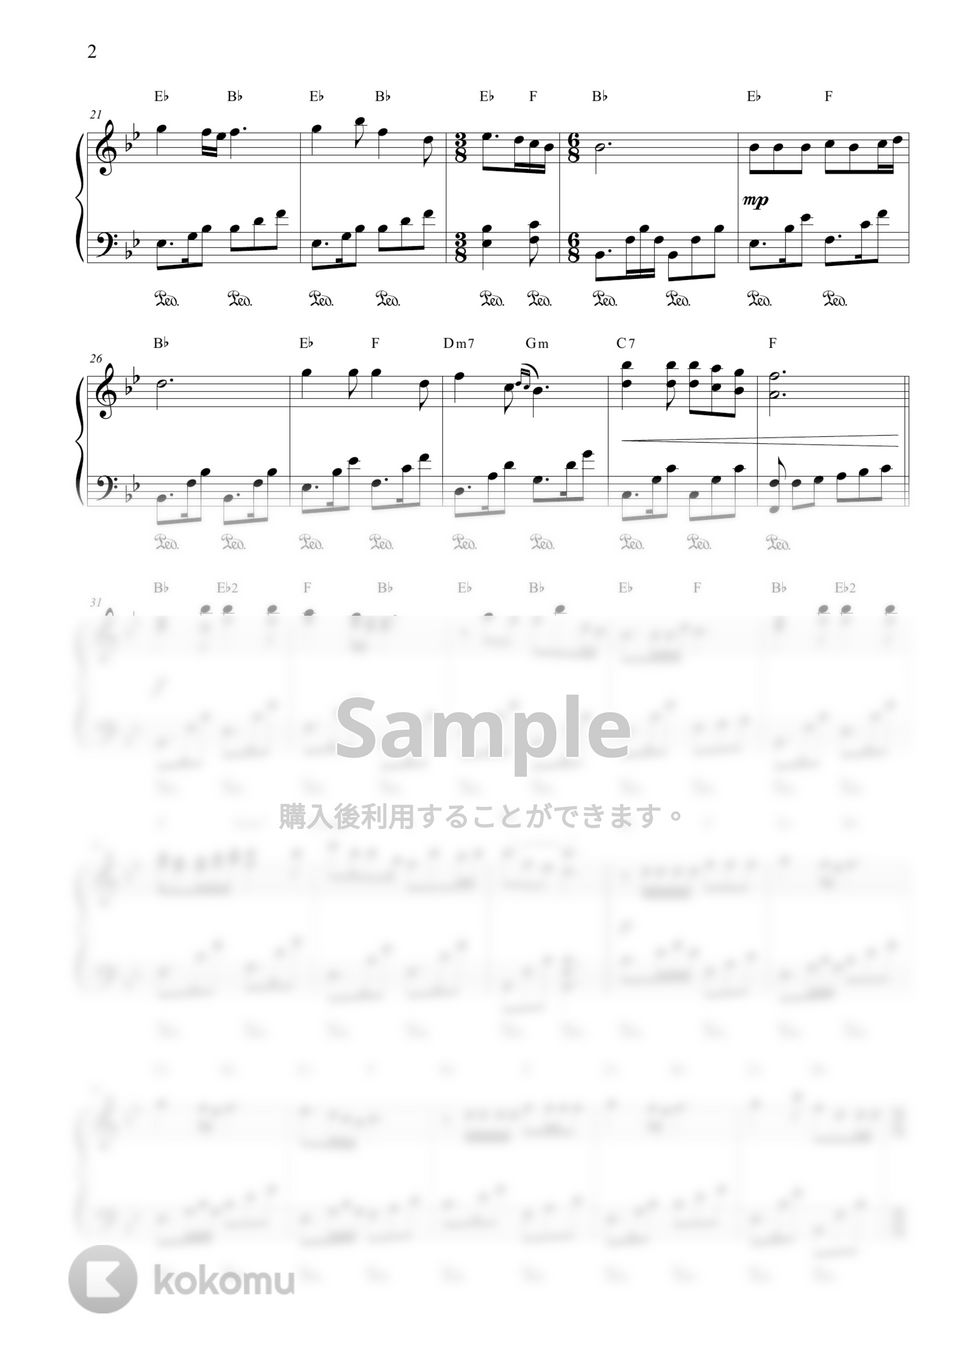 あいみょん - 愛の花 (中級) by CANACANA family